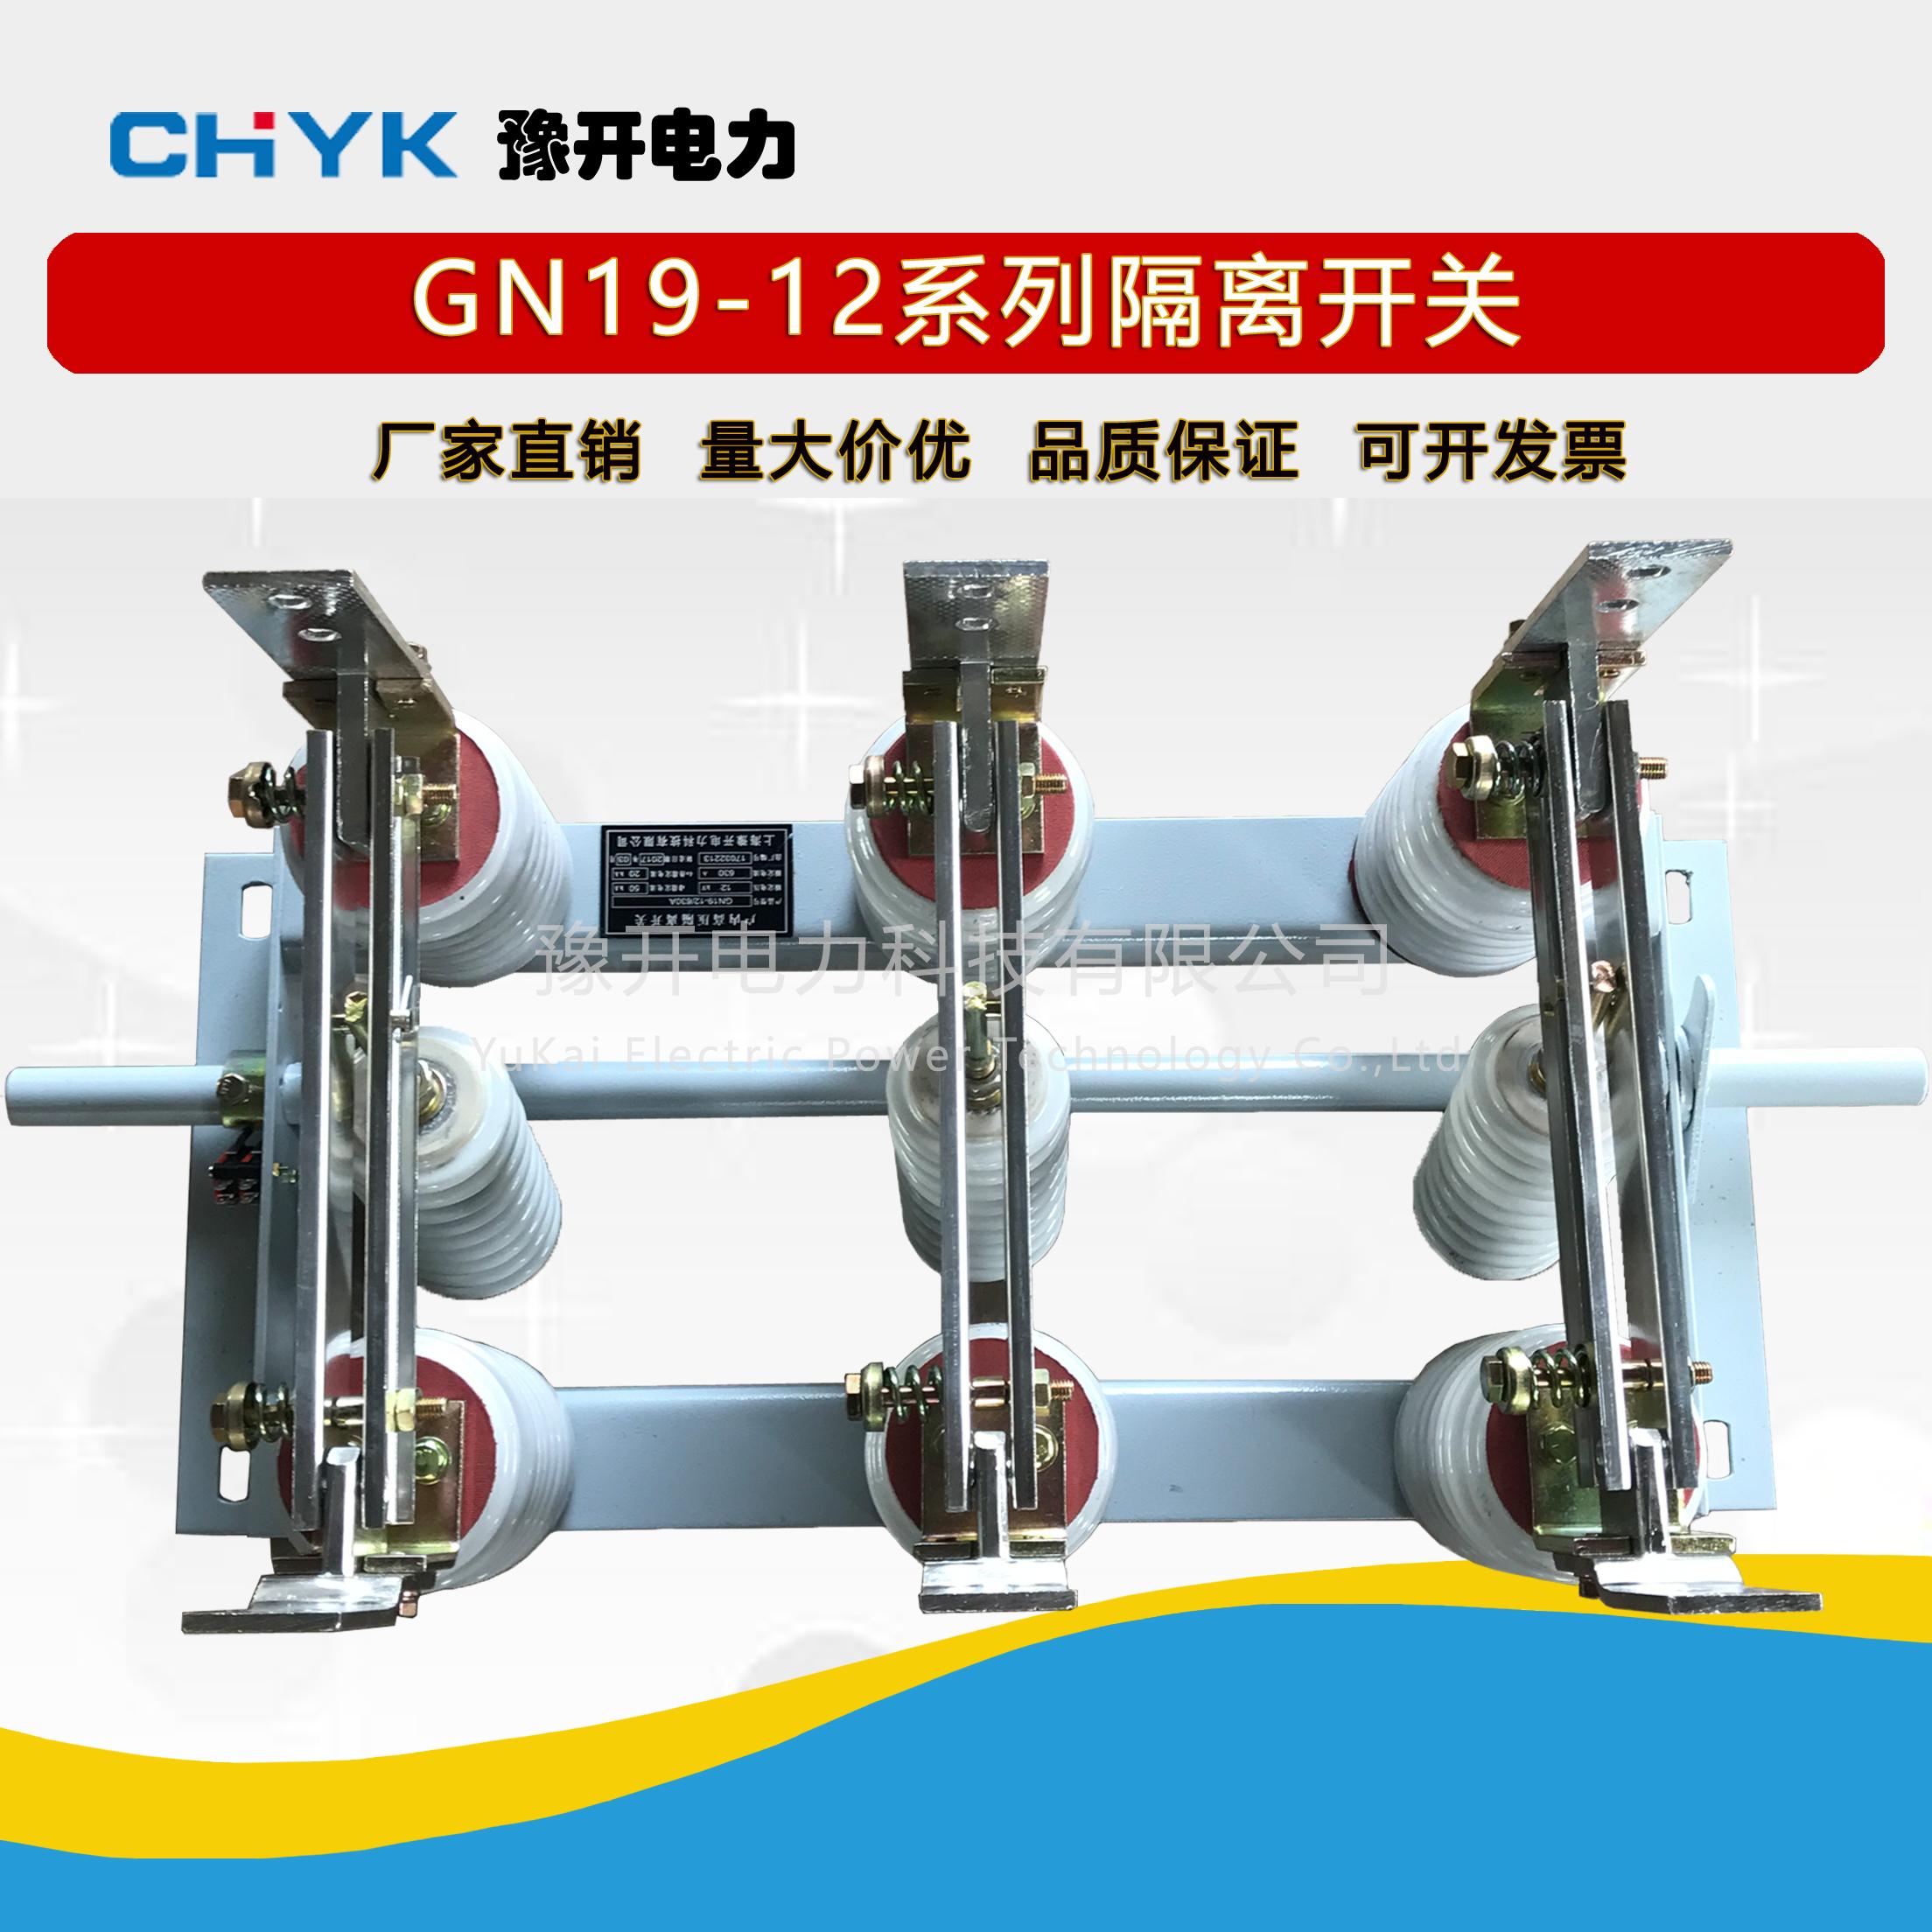 GN19-12C/630A面板式户内高压刀闸隔离开关